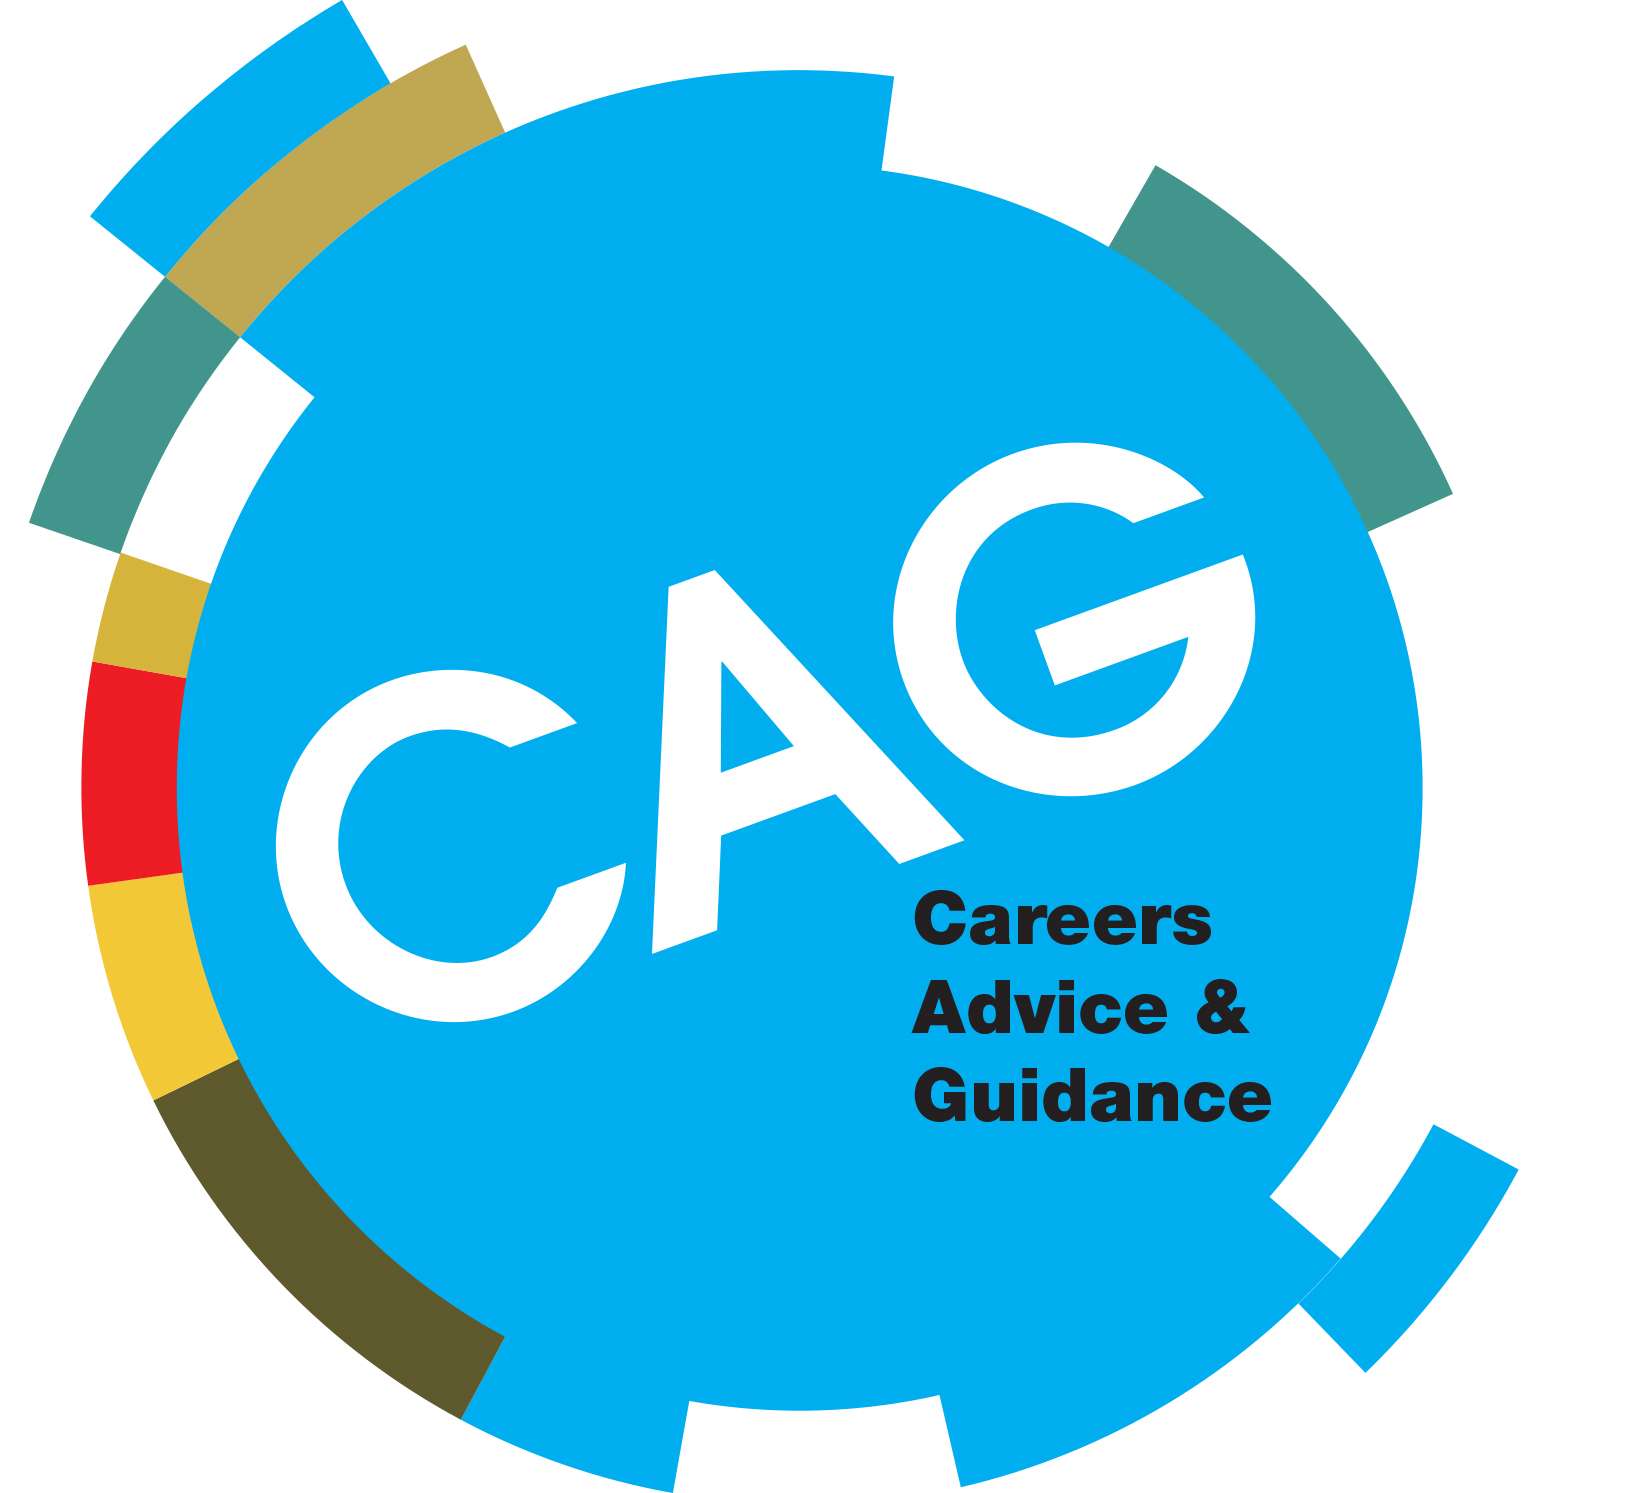 Careers advice and guidance logo